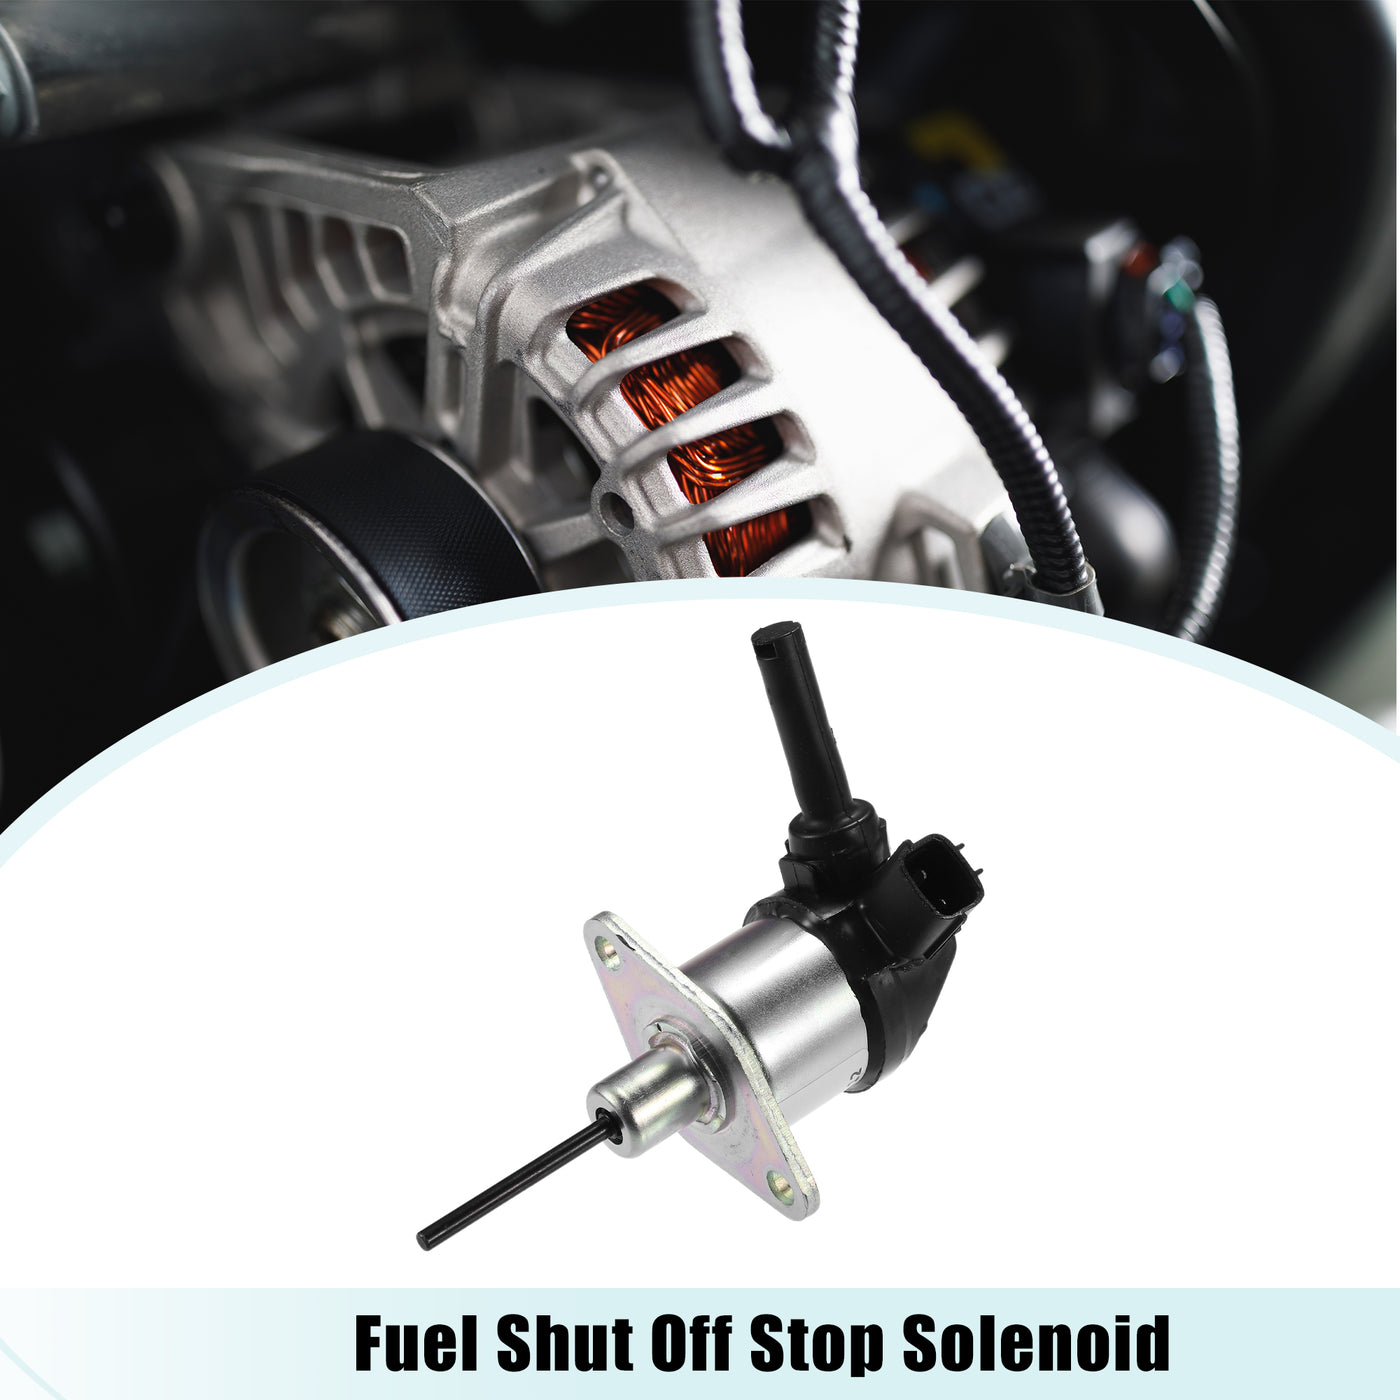 ACROPIX Fuel Shut Off Stop Solenoid Valve 6684826 7022789 1A021-60010 Fit for Tractor L2800 L3130 L3200 L3240 L3400 L3430 L3430 - Pack of 1